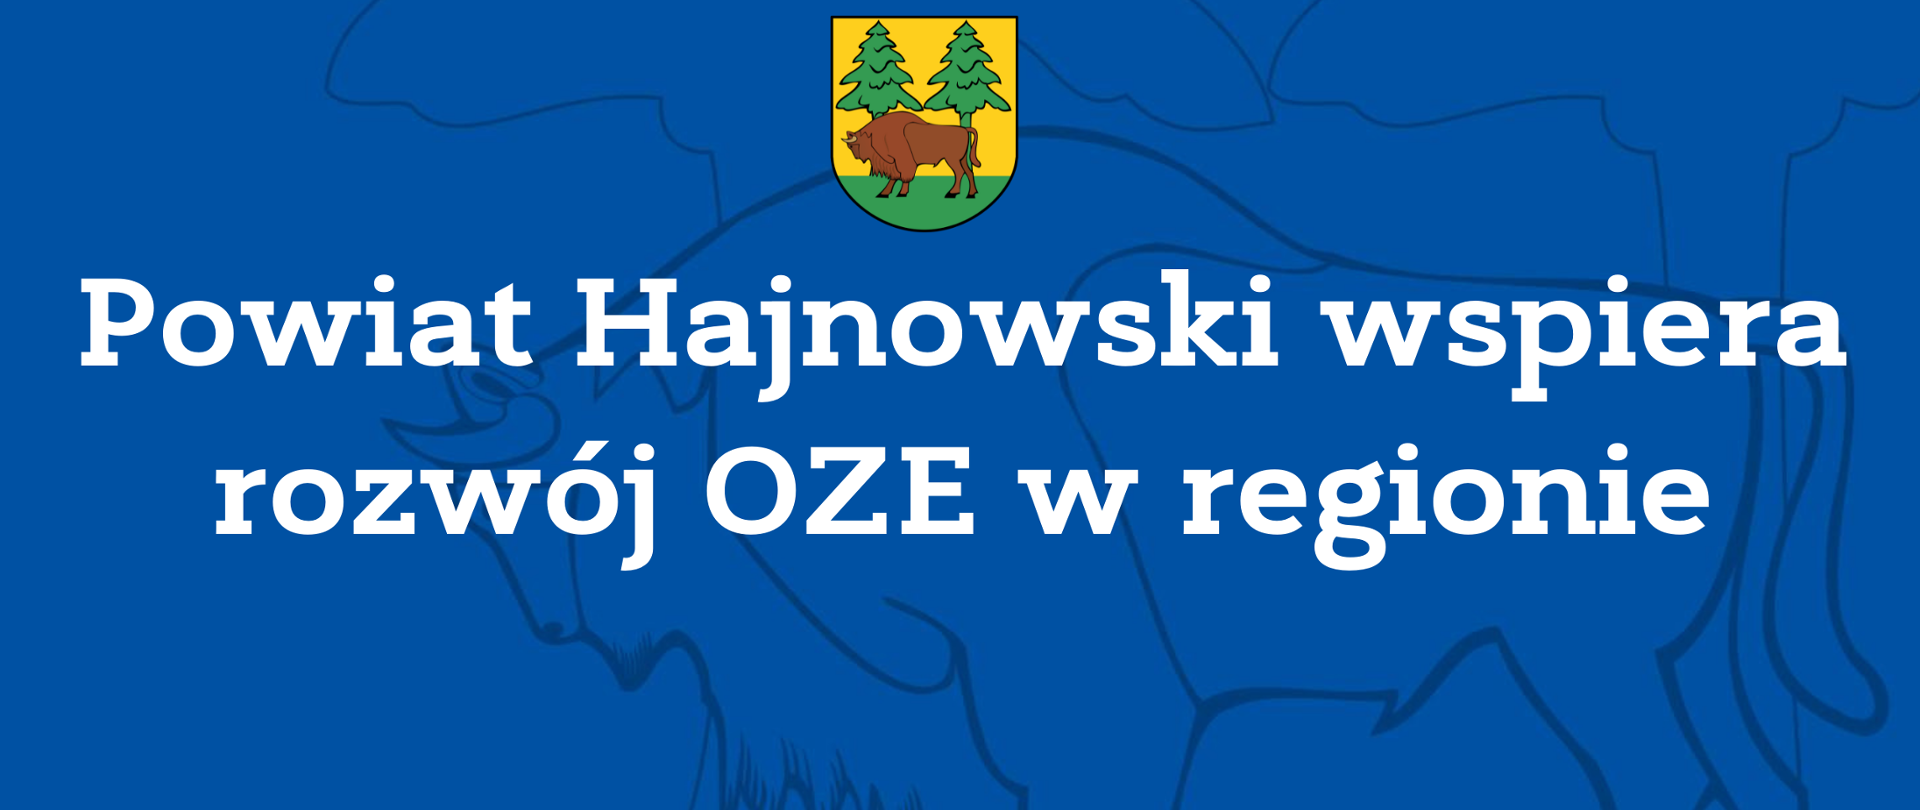 Powiat Hajnowski wspiera rozwój OZE w regionie